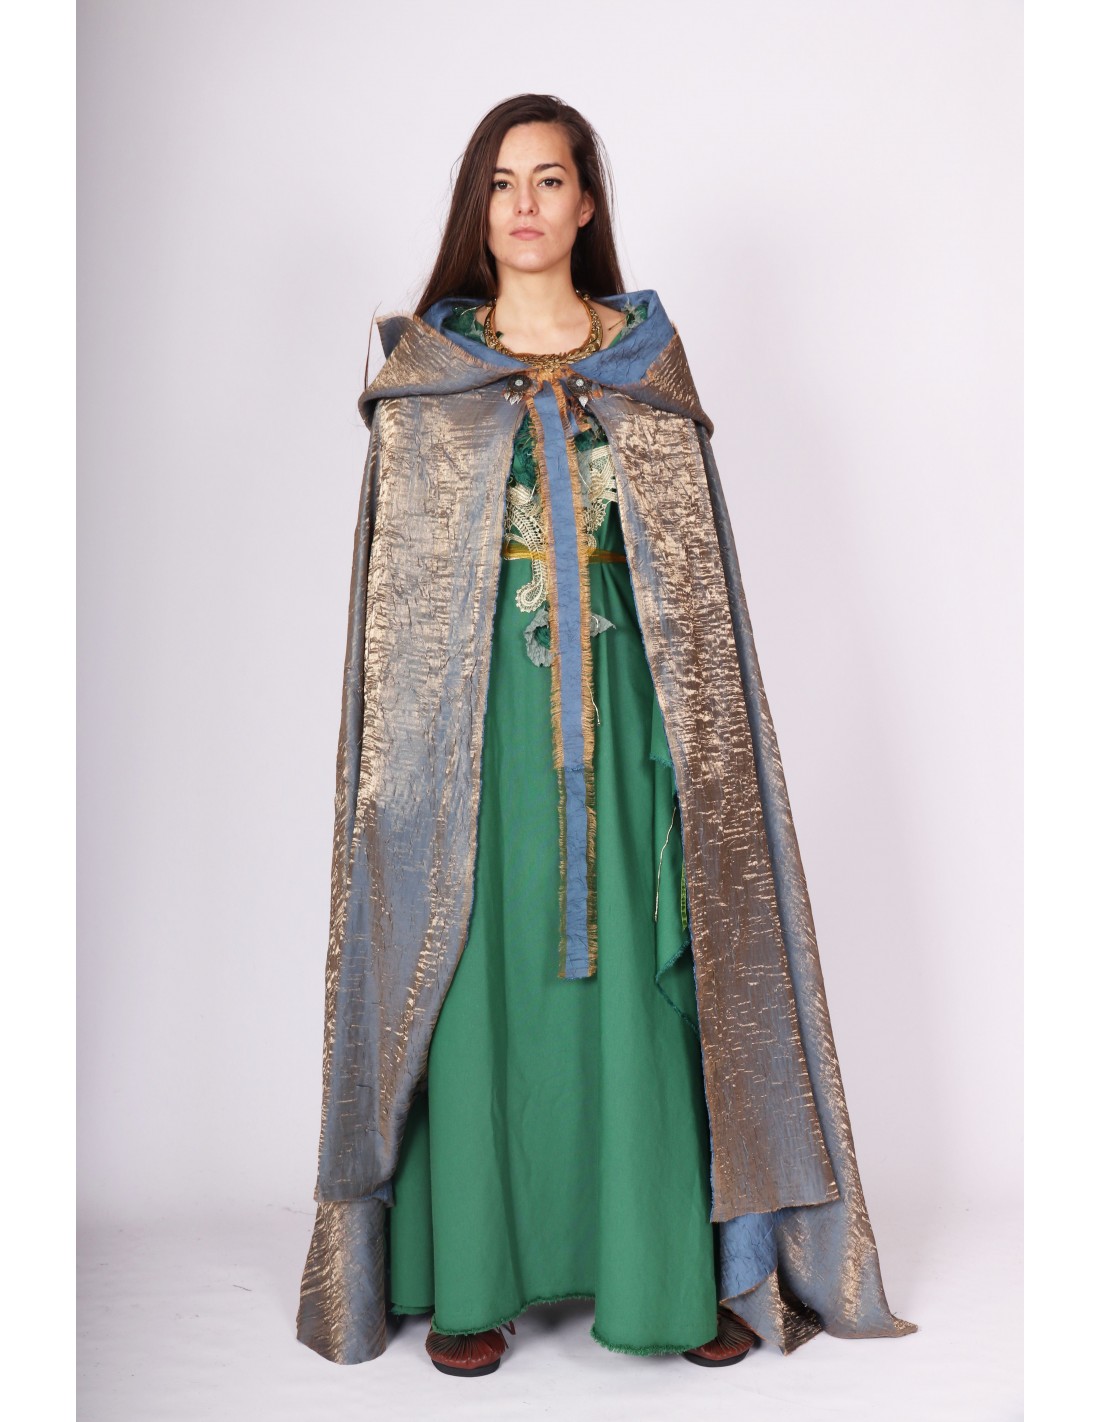 Capa medieval, dama Gretchen, lana recia, con capucha. (Varios